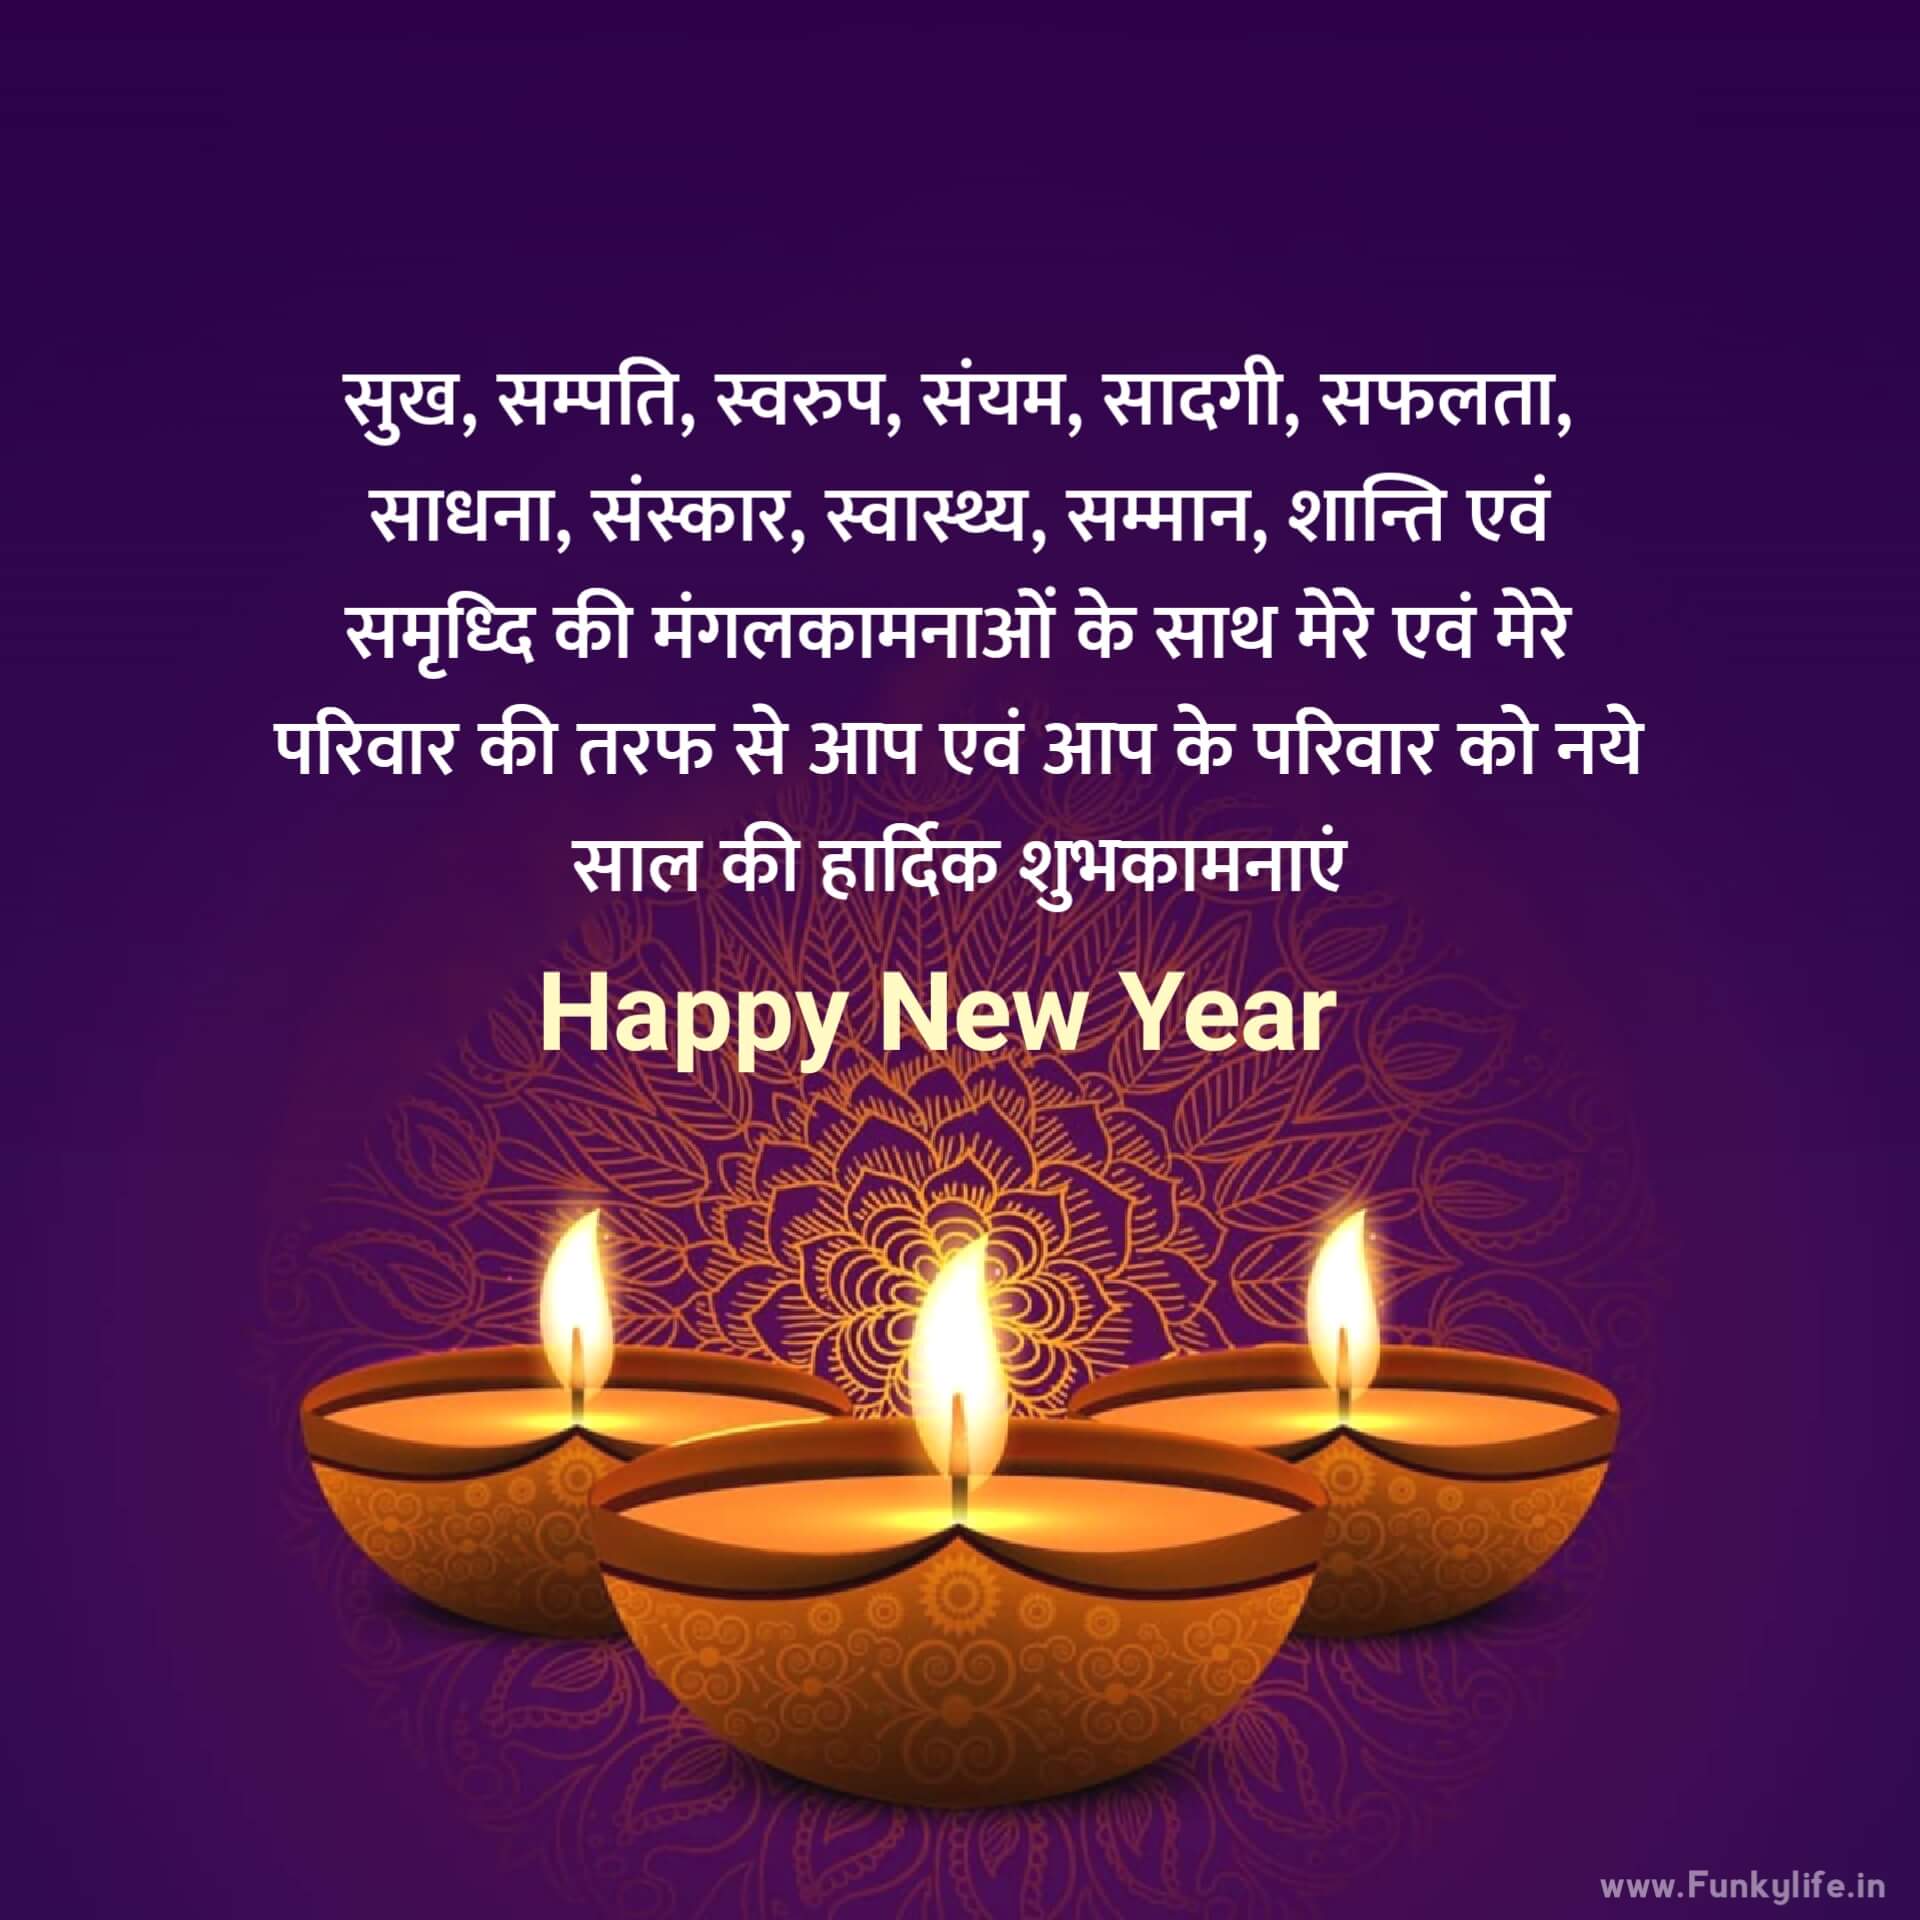 Hindi Happy New Year Wishes